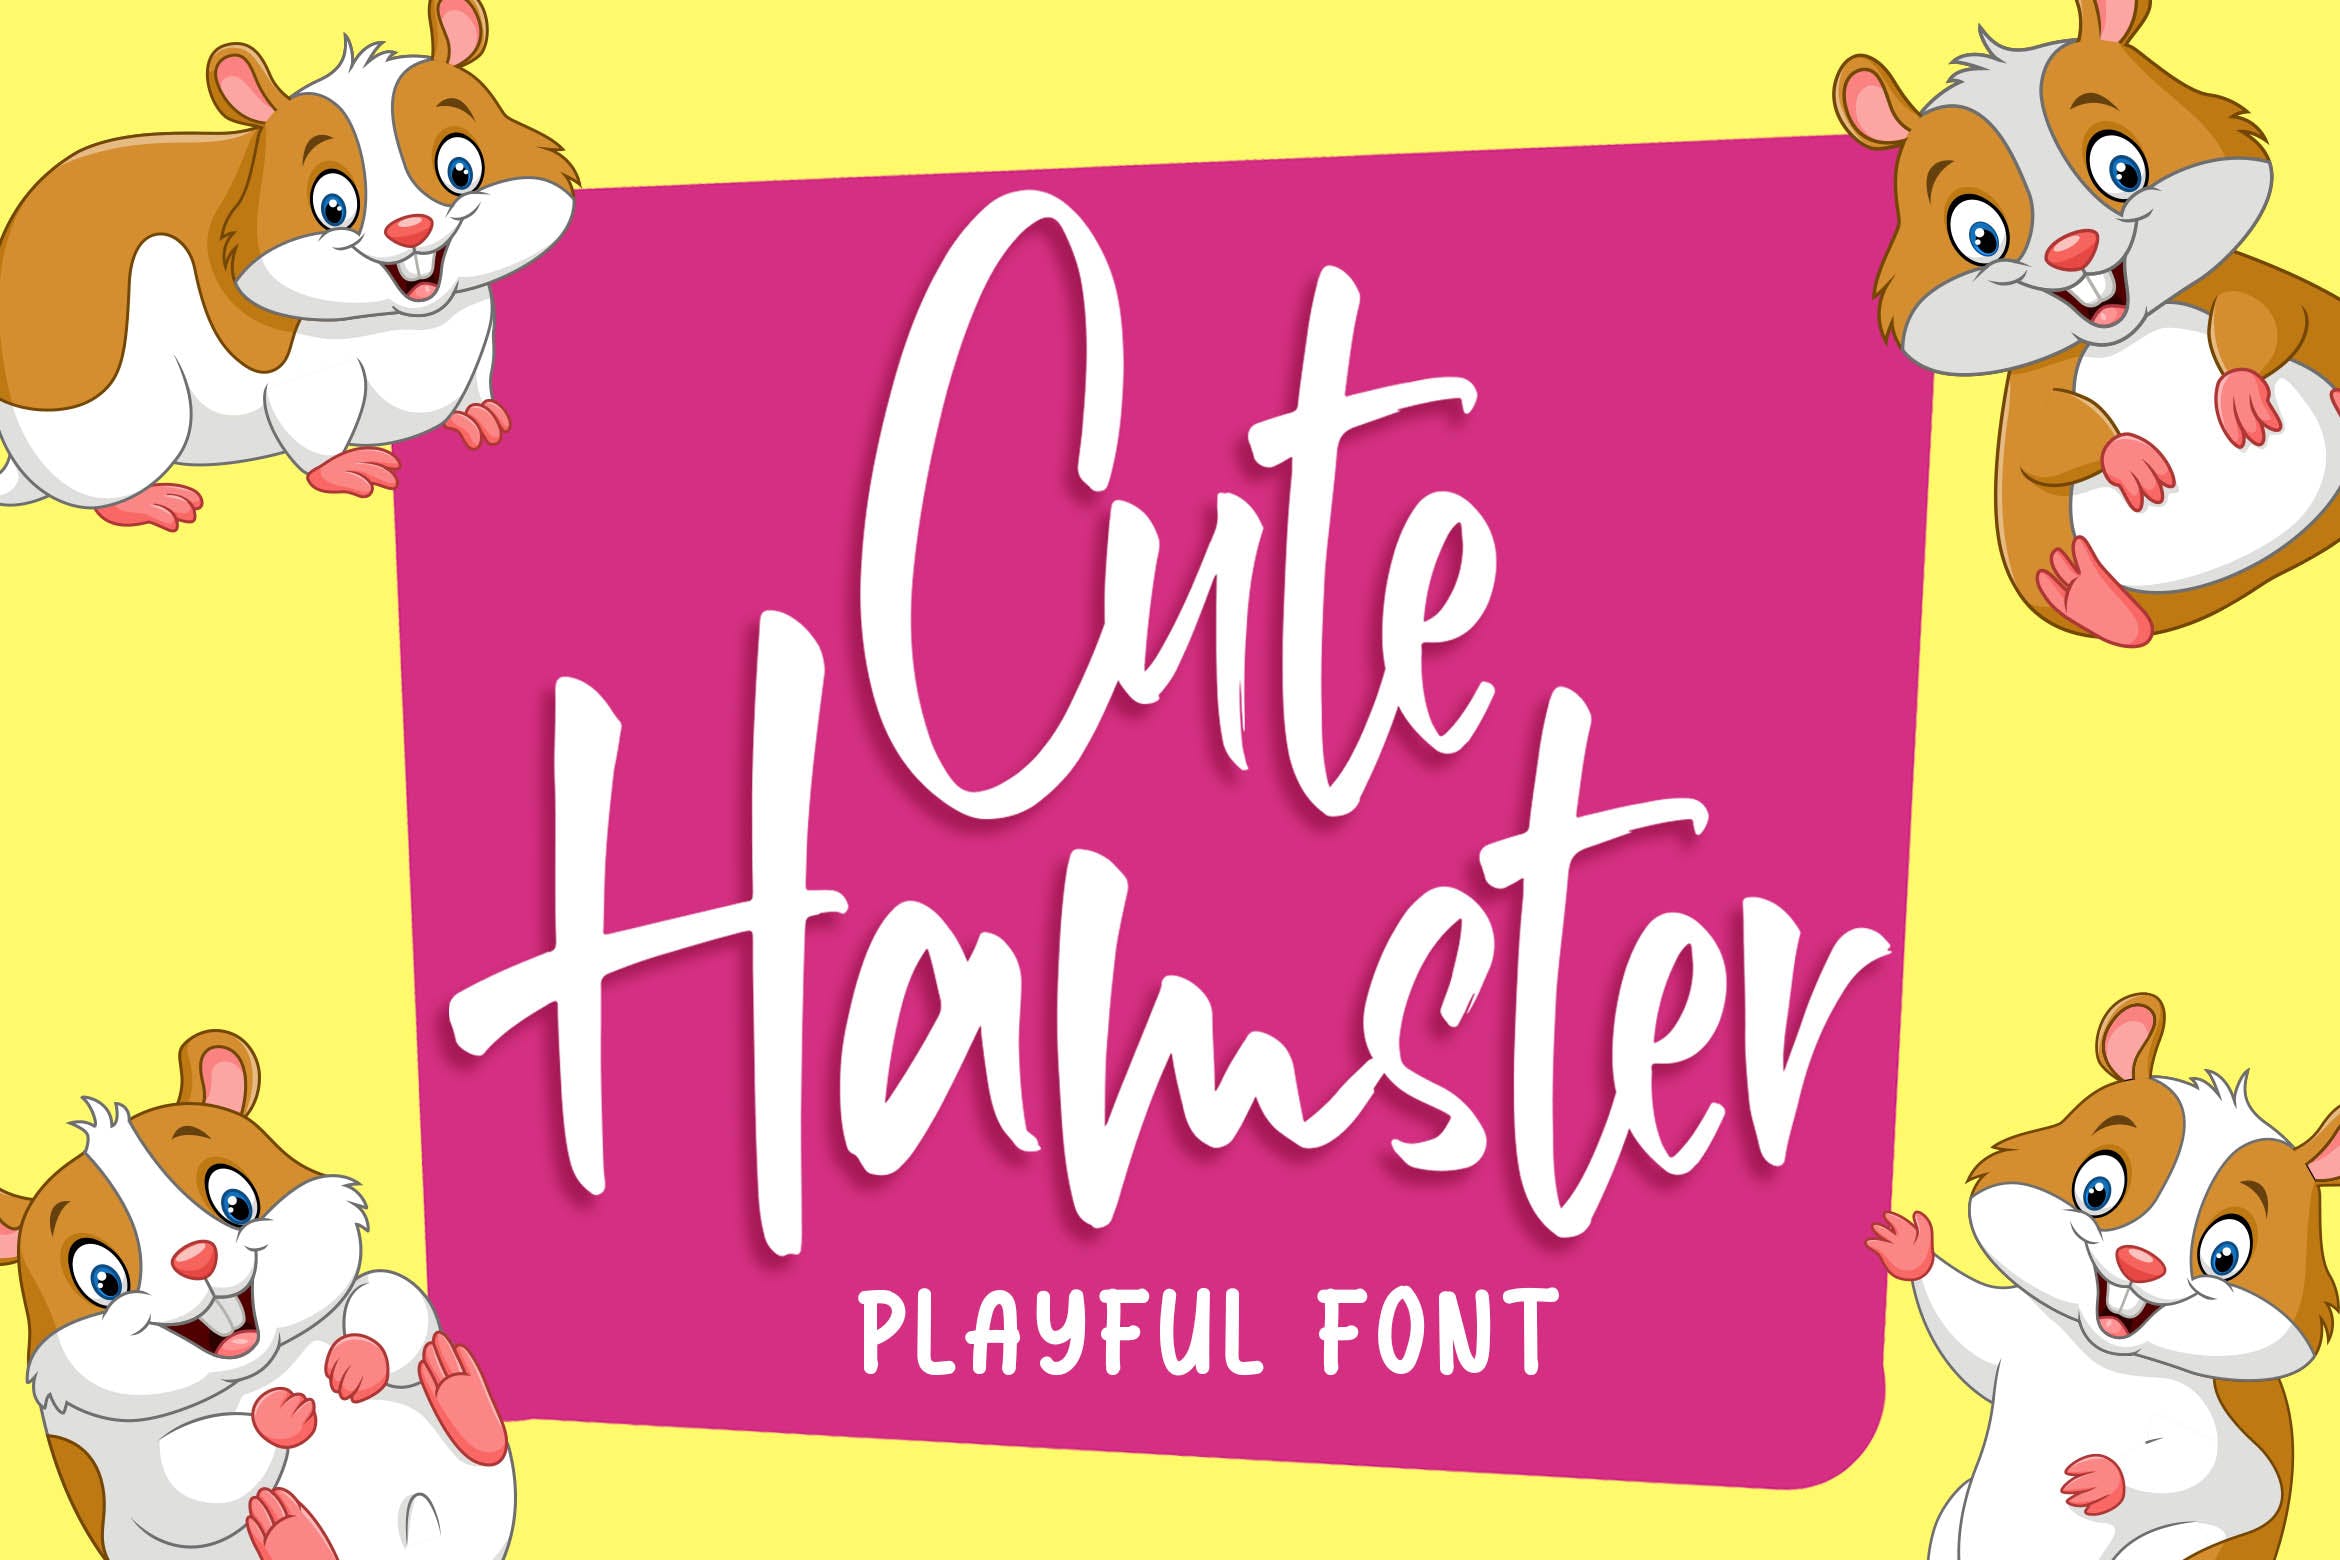 俏皮可爱风格英文手写装饰字体大洋岛精选 Cute Hamster – Playful Font插图